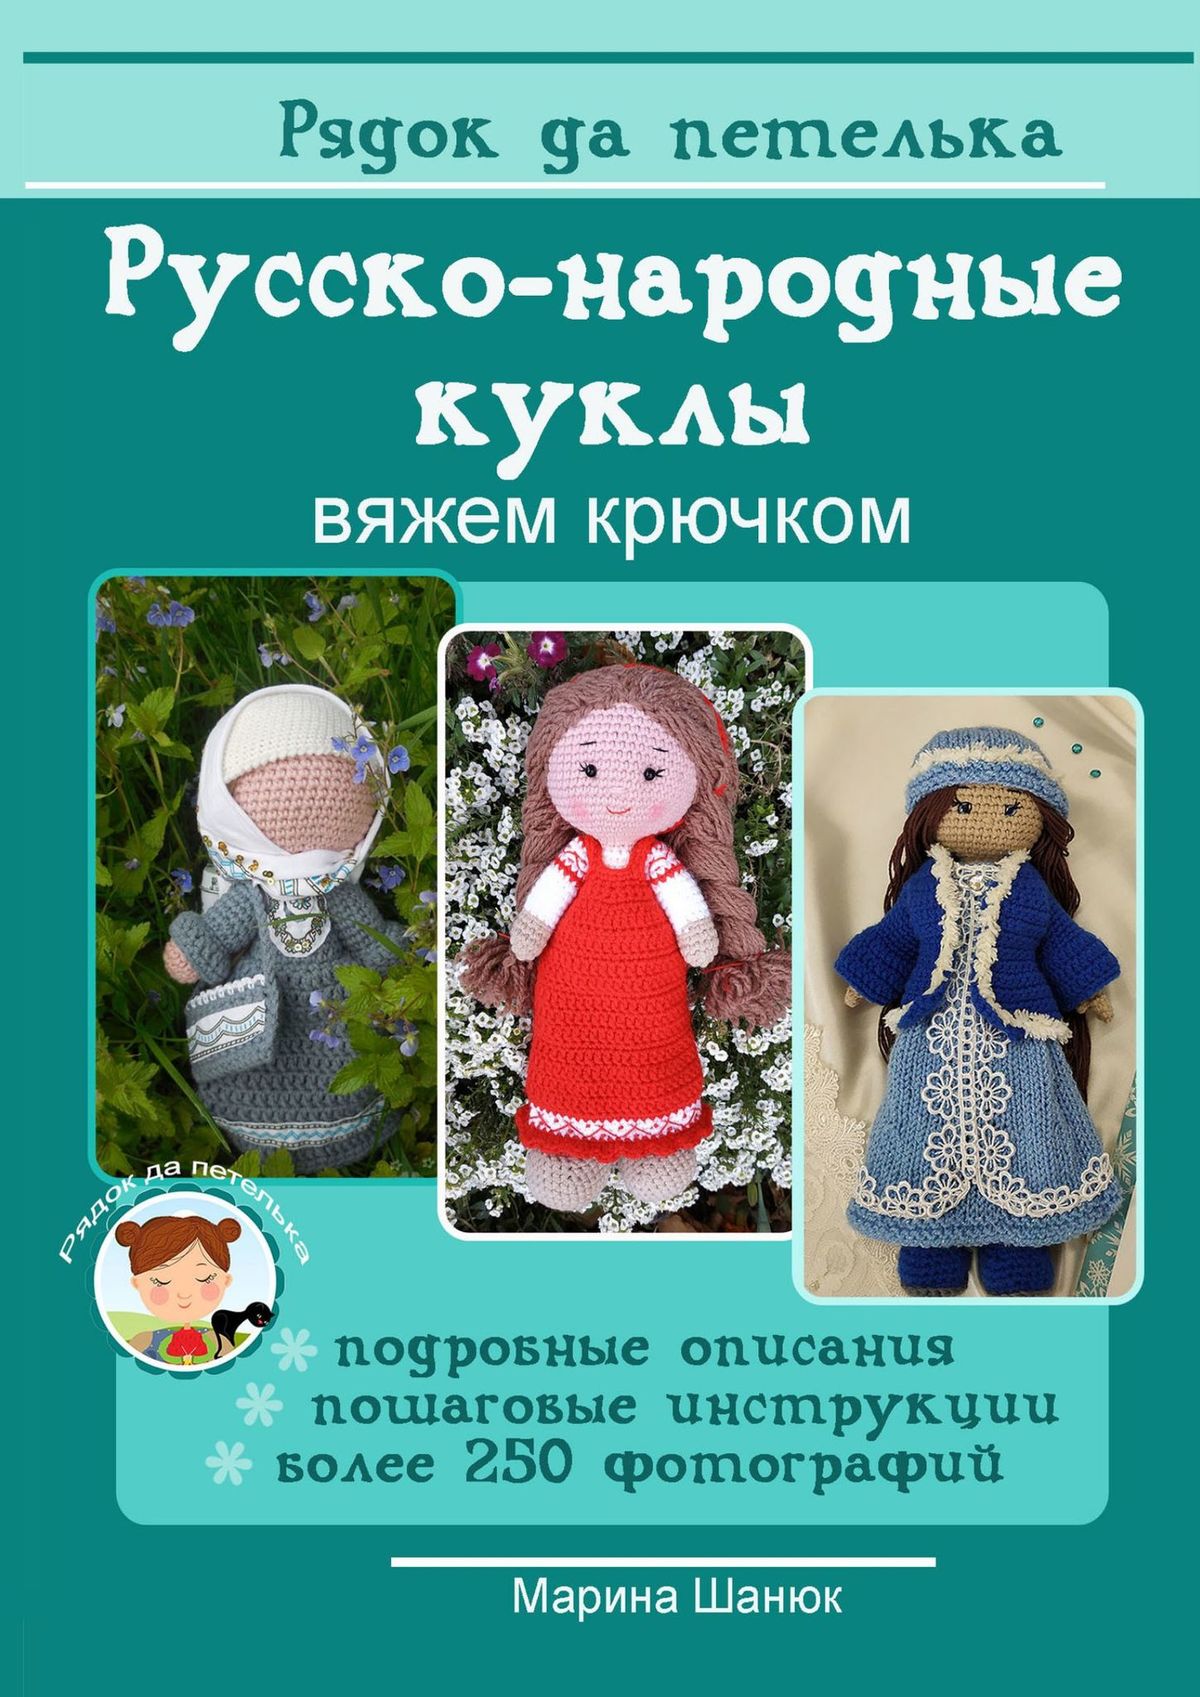 Книга Русско-народные куклы. Вяжем крючком из серии , созданная Марина Шанюк, может относится к жанру Хобби, Ремесла. Стоимость электронной книги Русско-народные куклы. Вяжем крючком с идентификатором 42006331 составляет 198.00 руб.